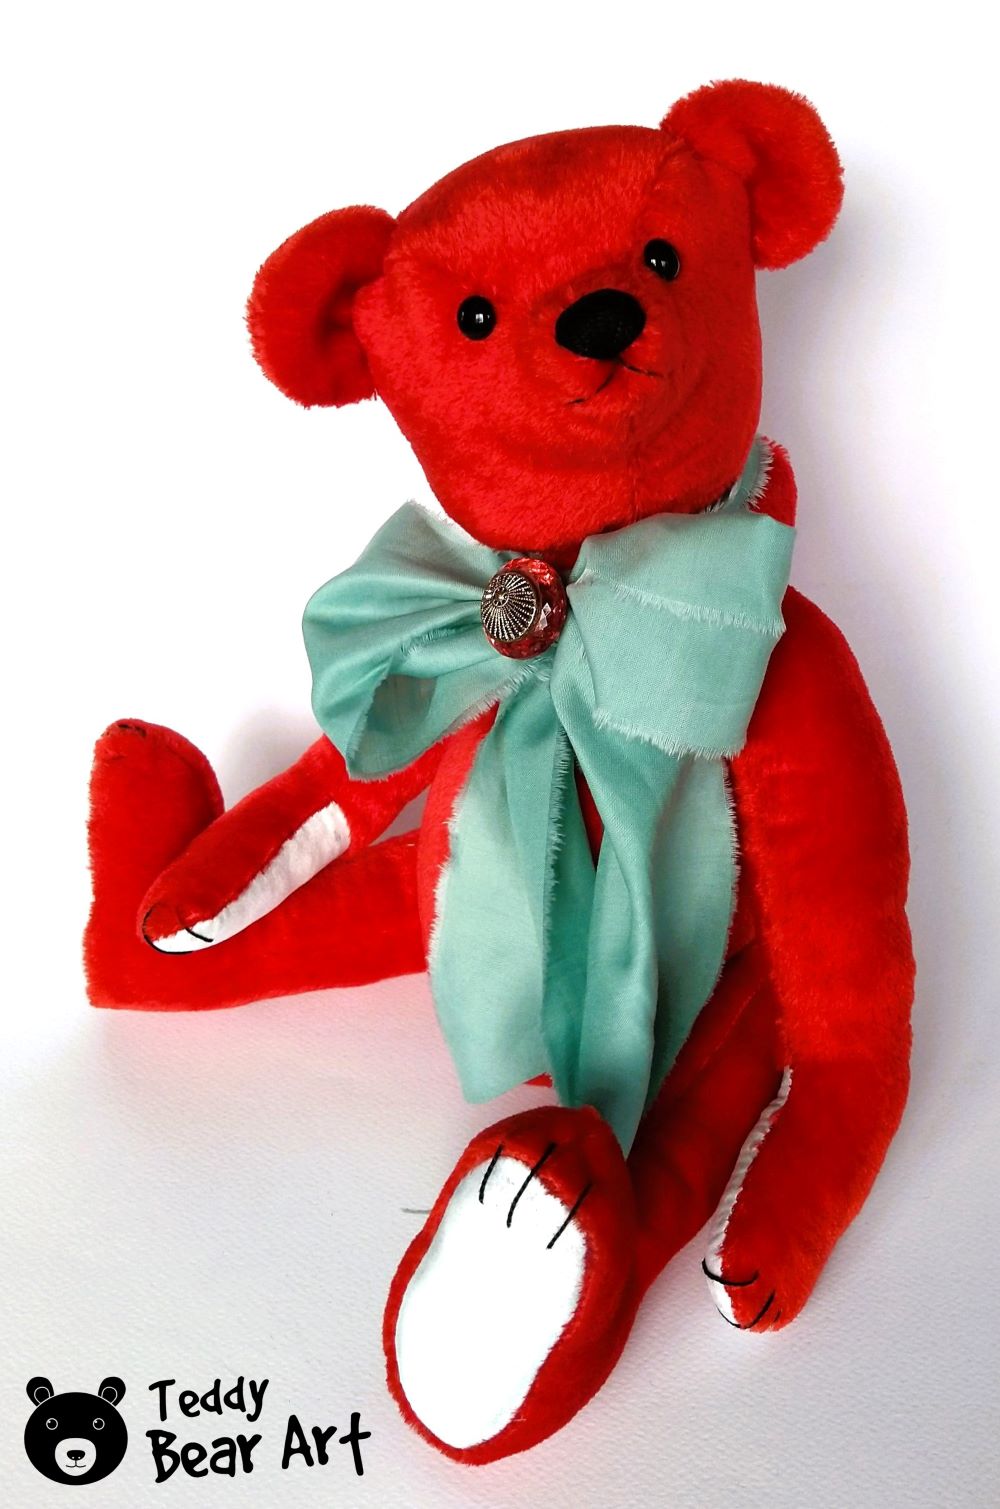 Sneak Peek: Exclusive Mohair Red Teddy Bear Sewing Pattern Unveiled!